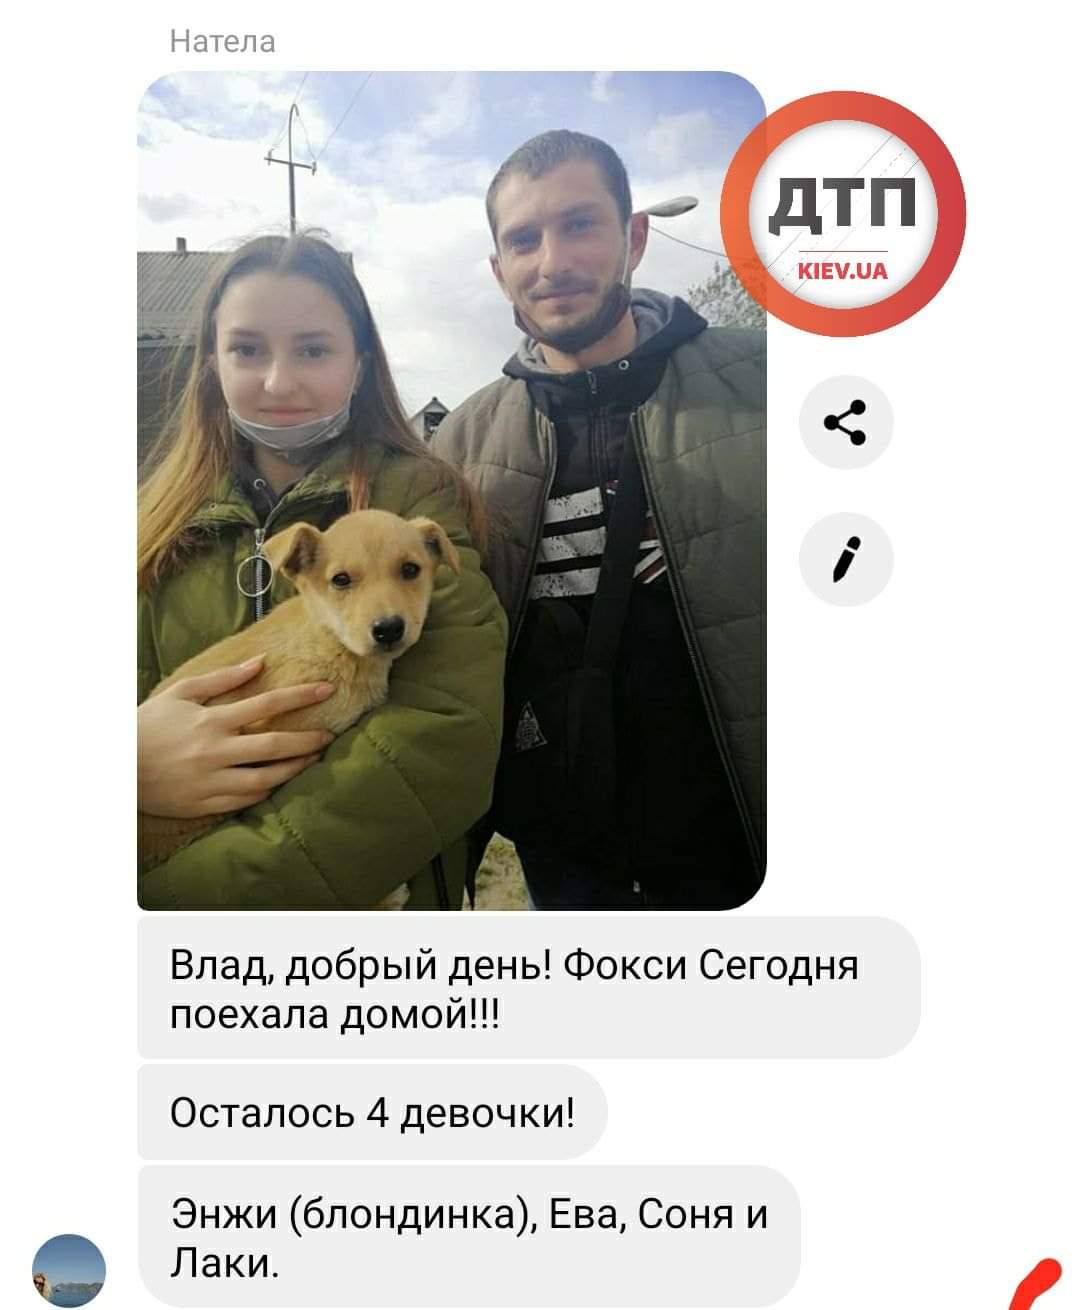 Шесть спасённых щенков из ямы в центре Киева обрели новый дом и любящую семью: осталось ещё четыре